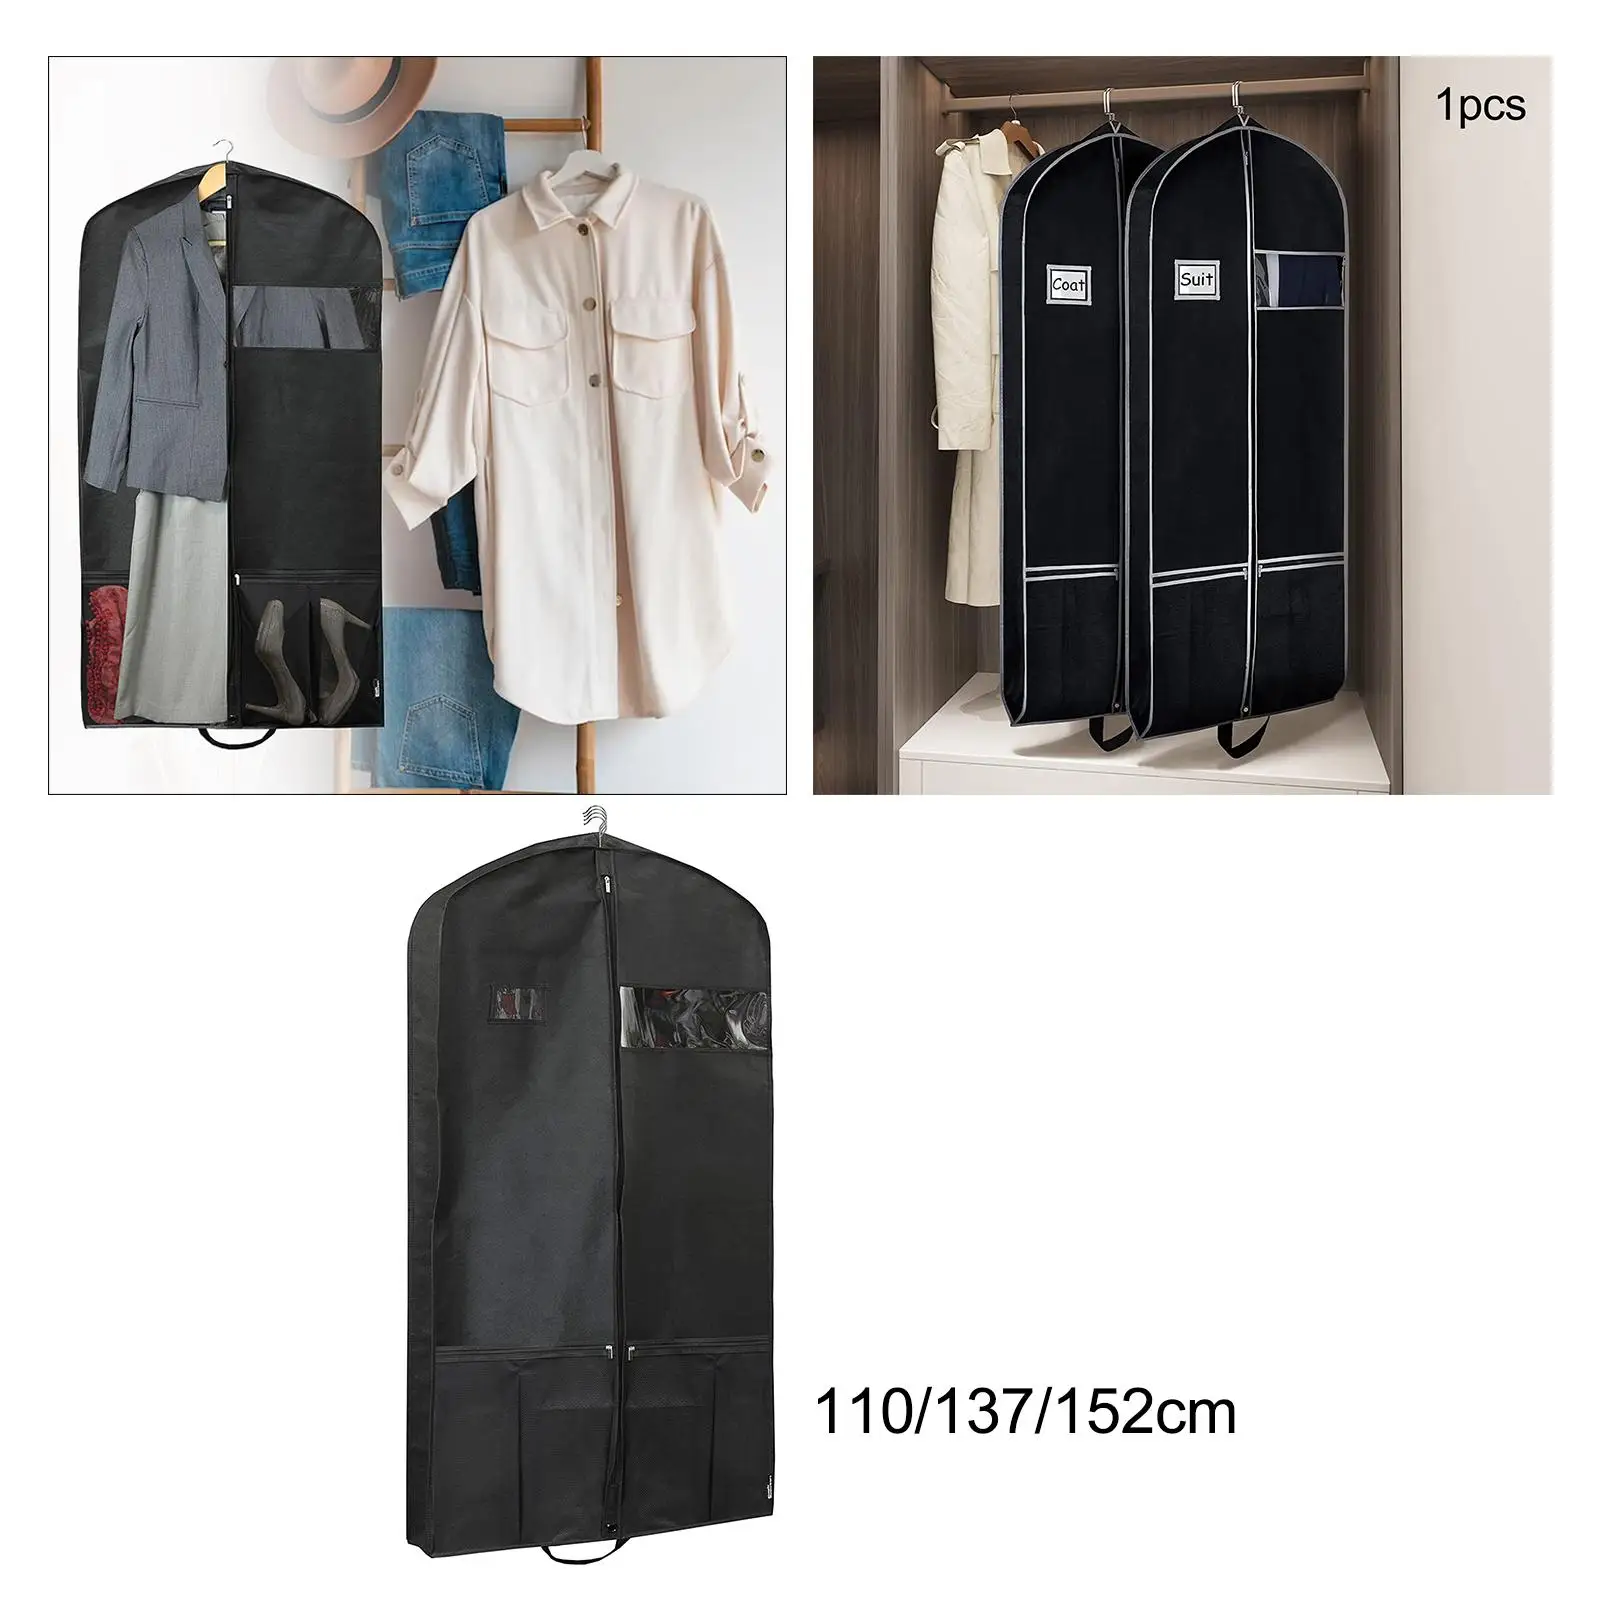 Garment Bag Coat Covers Water Resistance for Dress, Jacket, Uniform Suit Bag